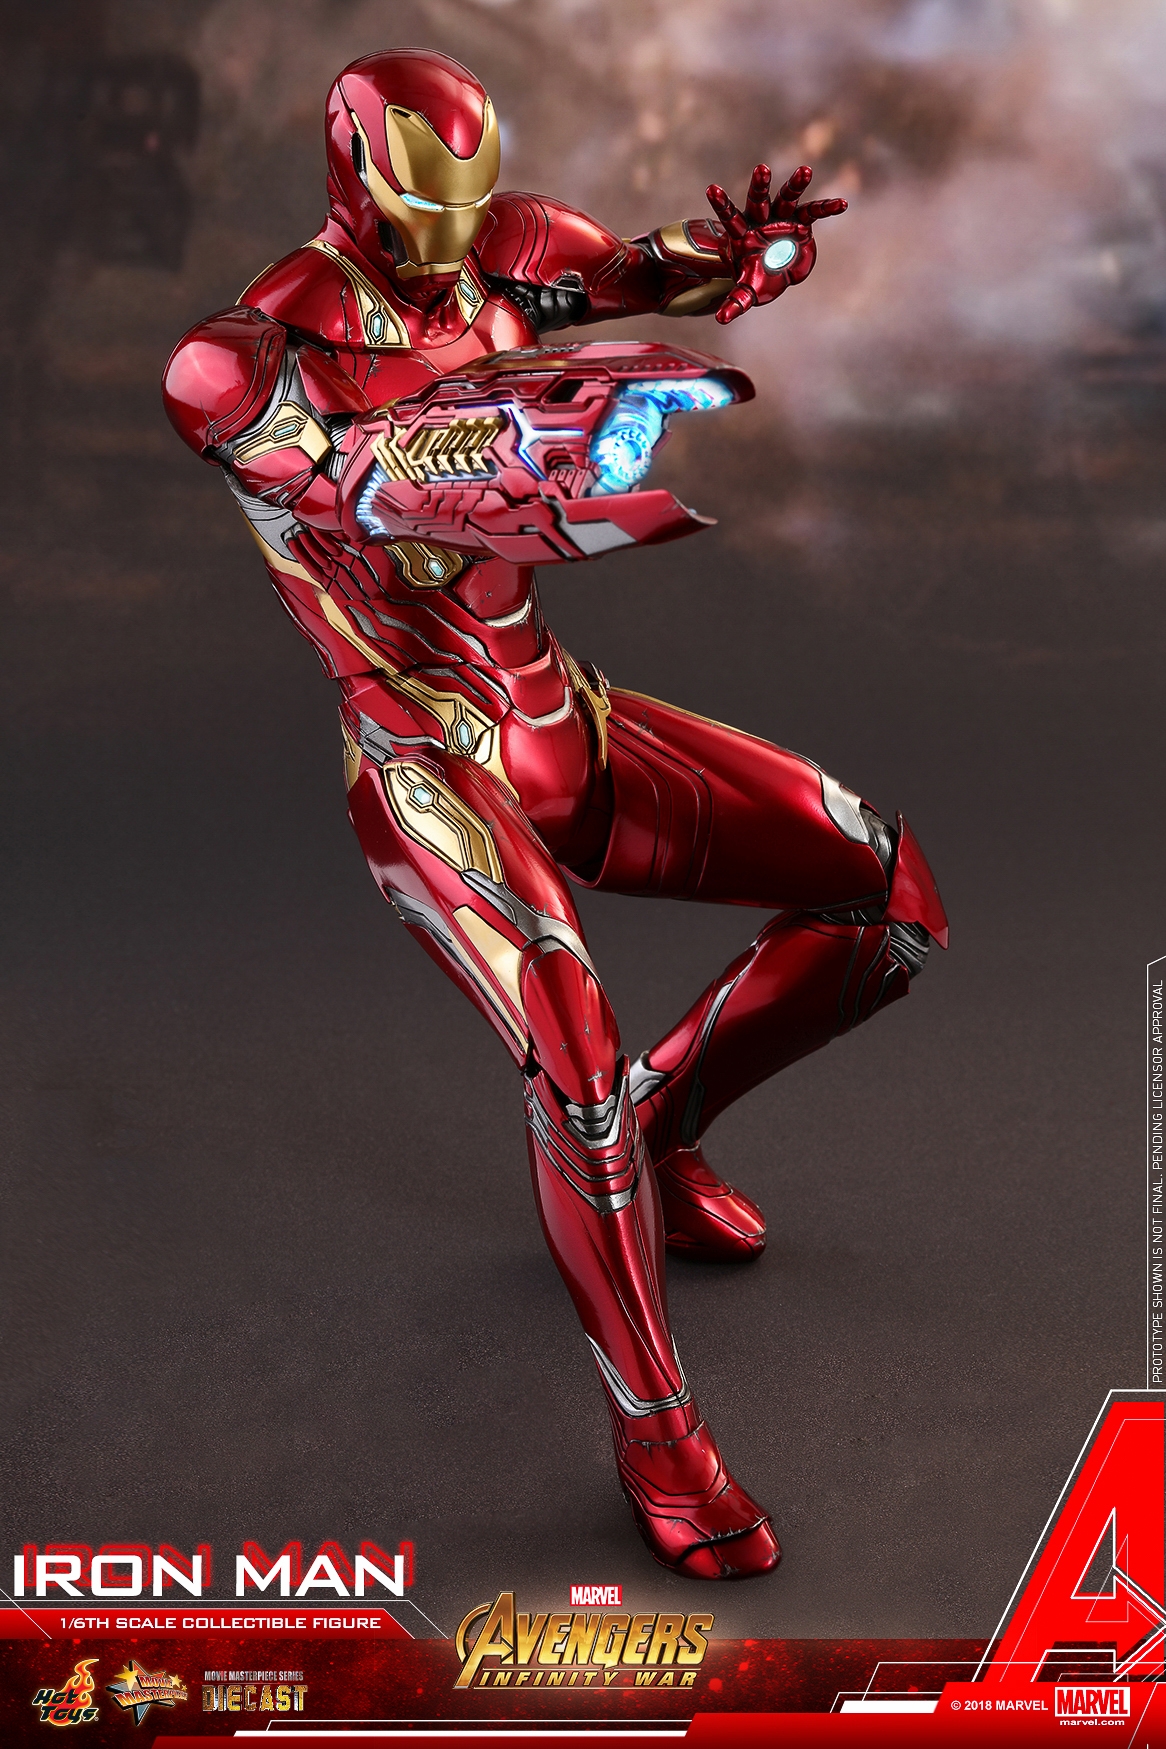 Hot-Toys-MMS473D23-Avengers-Infinity-War-Iron-Man-Collectible-Figure-009.jpg